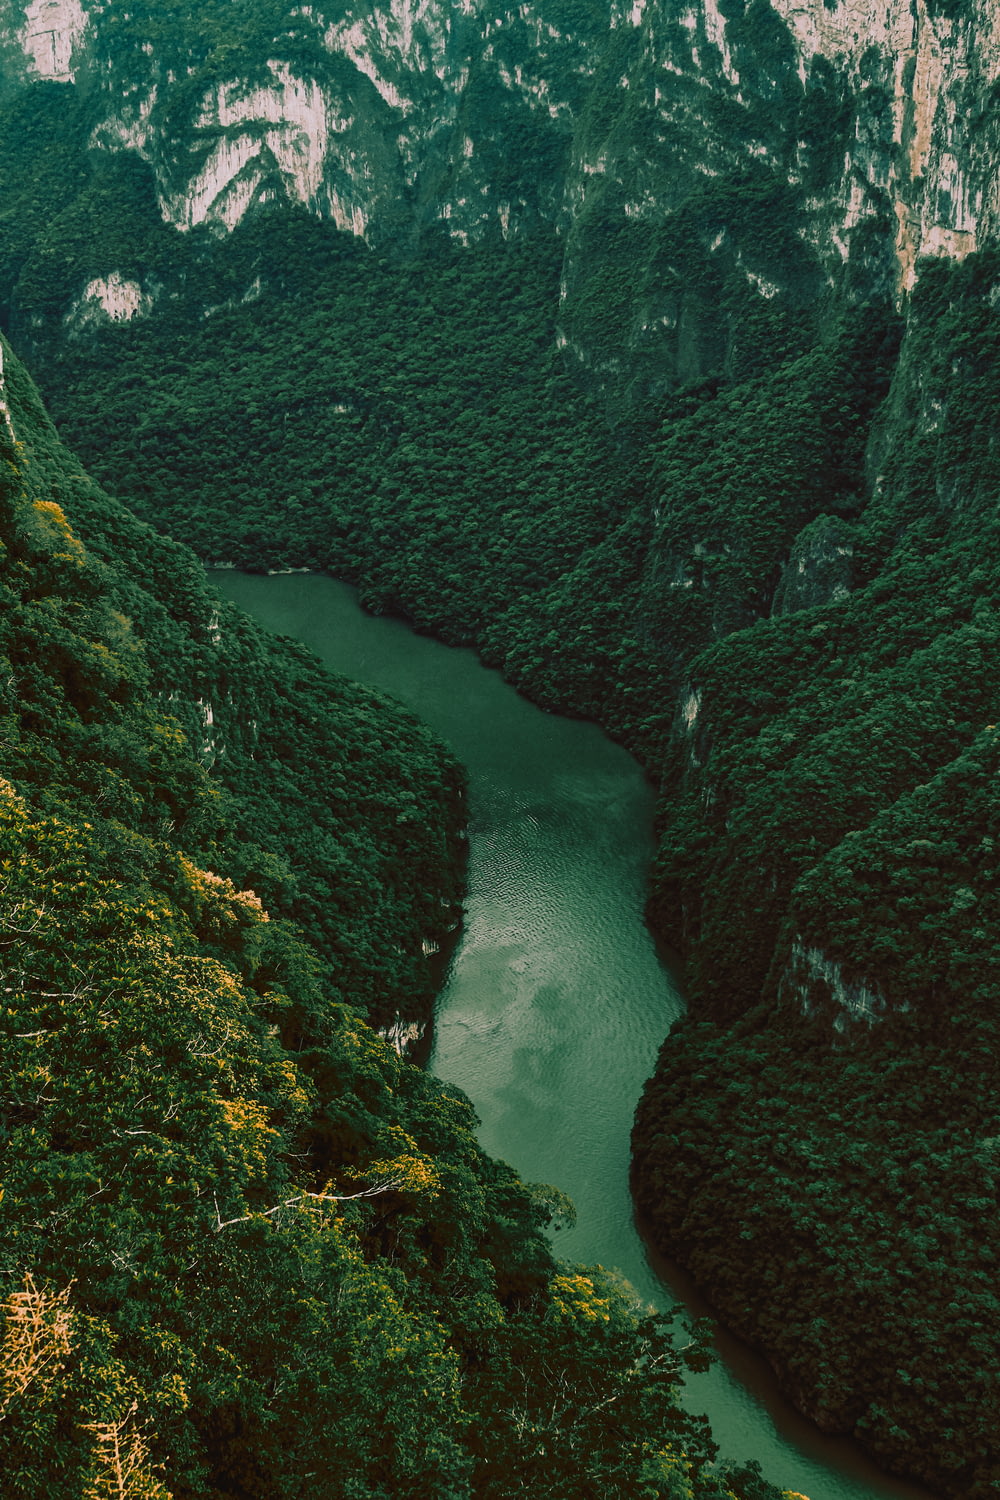 녹색 이끼로 덮인 바위 사이의 강